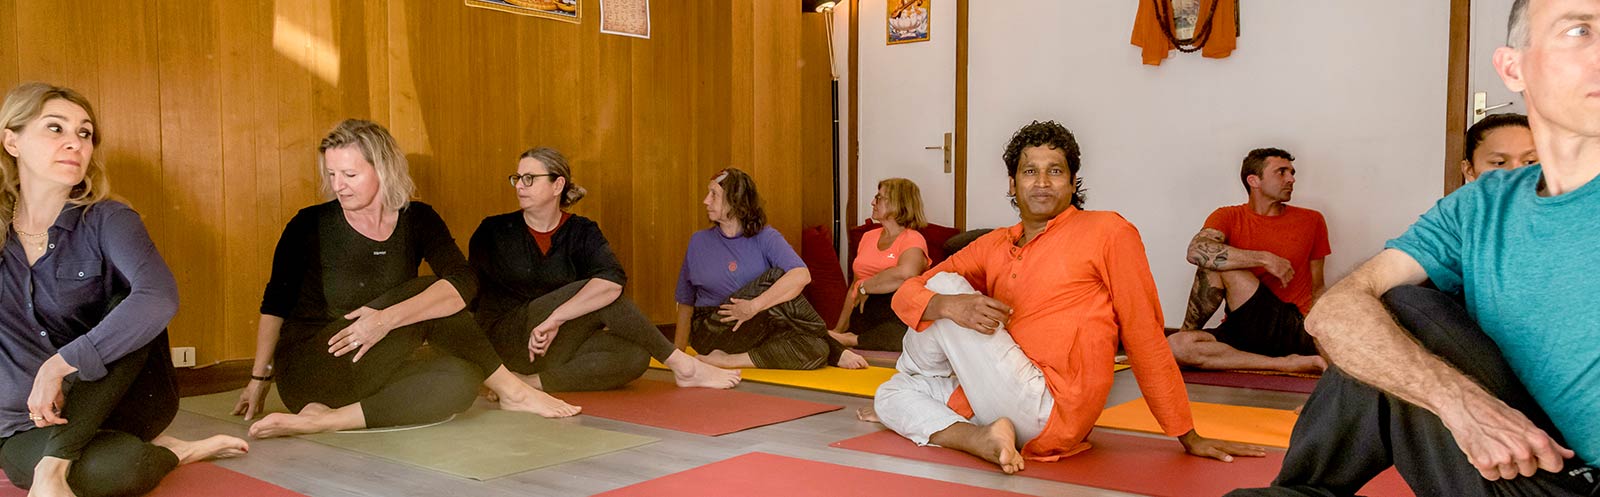 Cours de yoga en salle à Grenoble